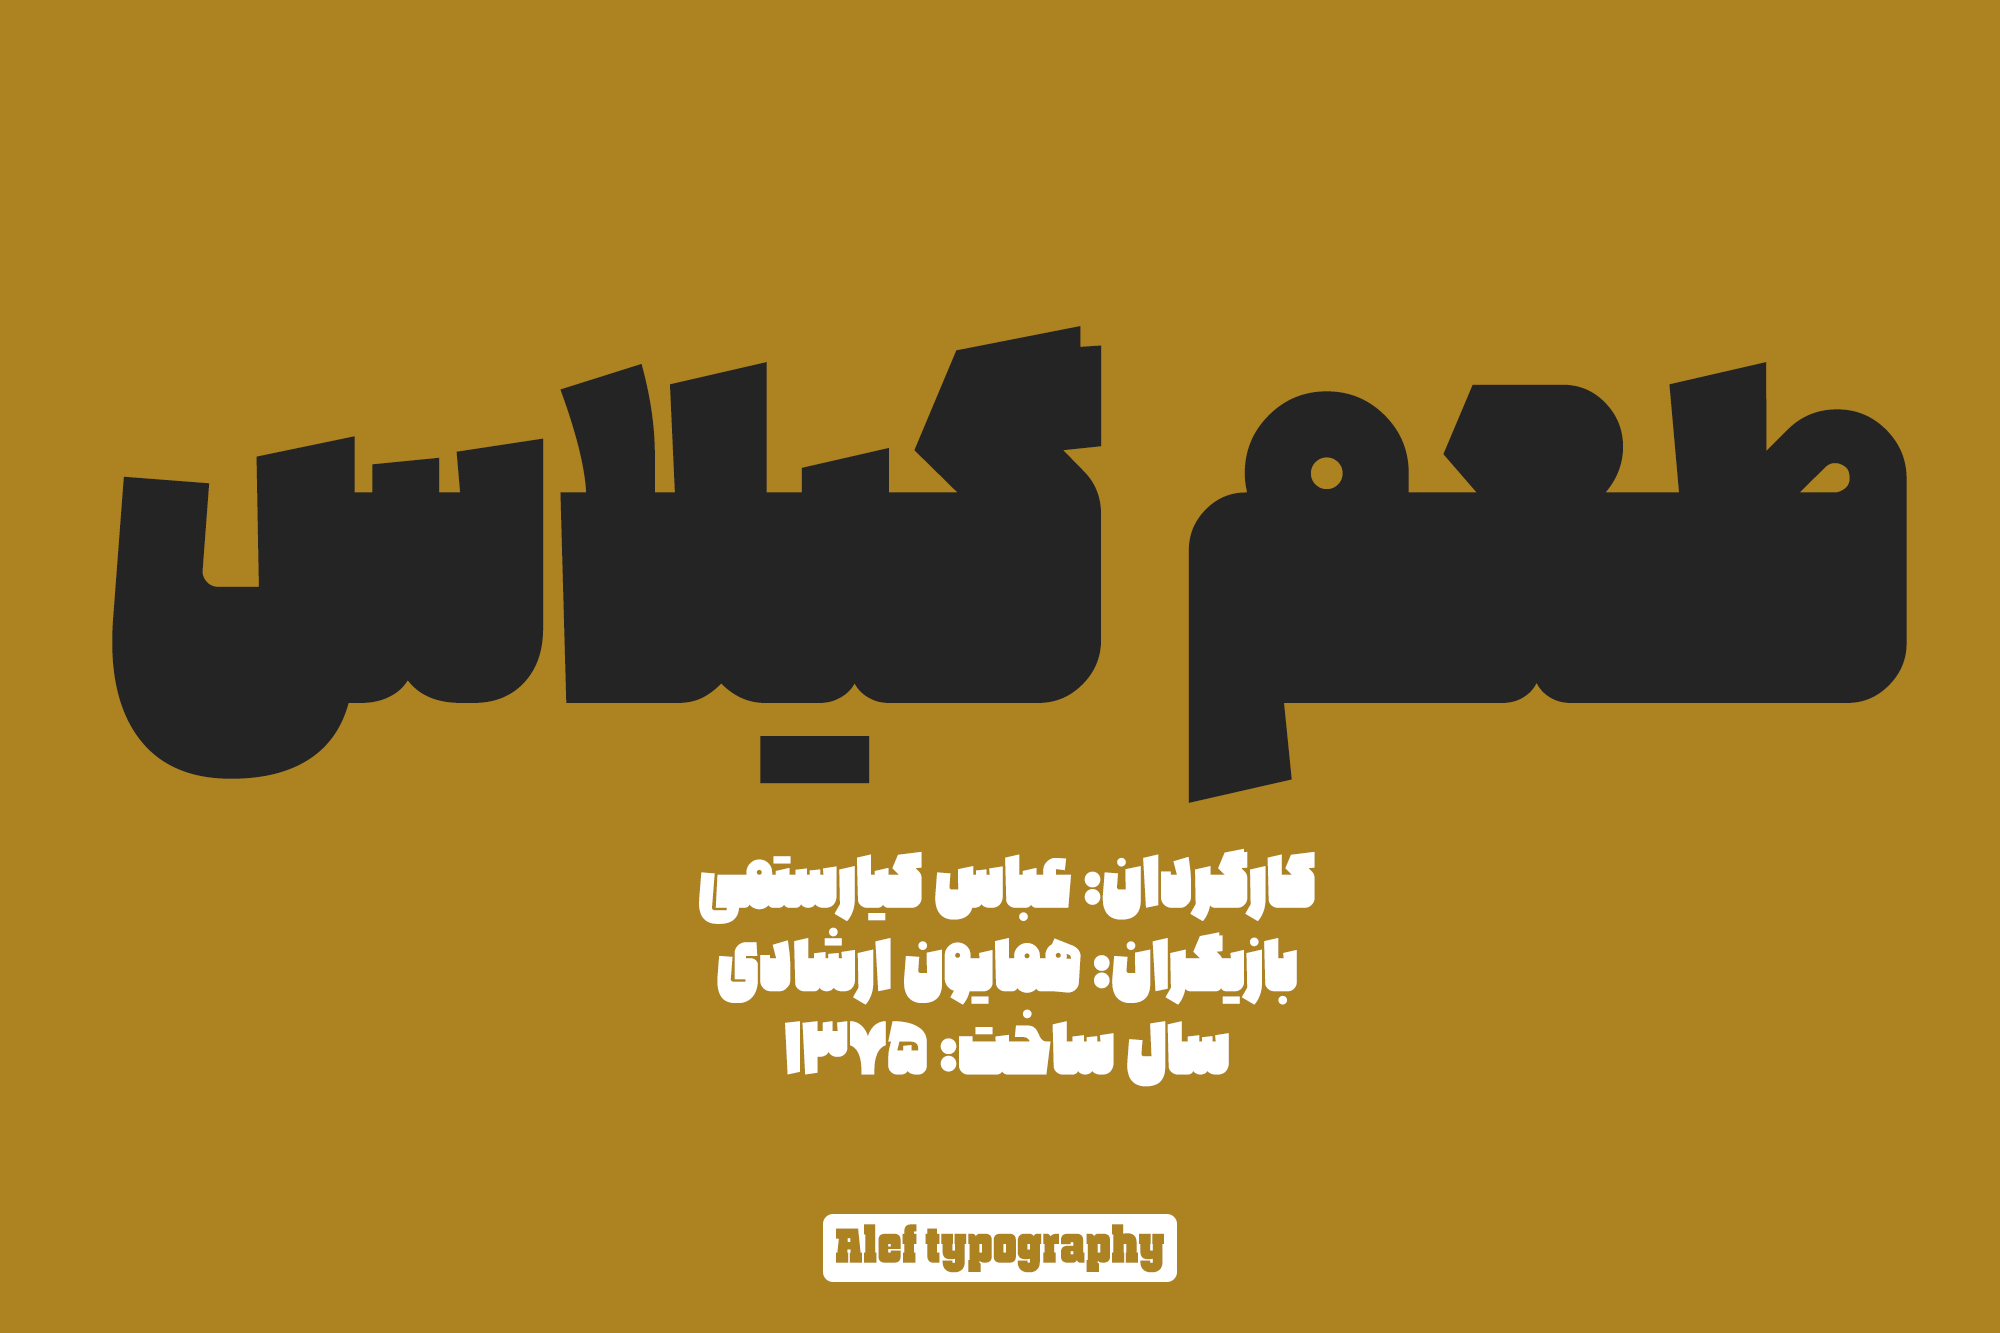 Alef-typography08